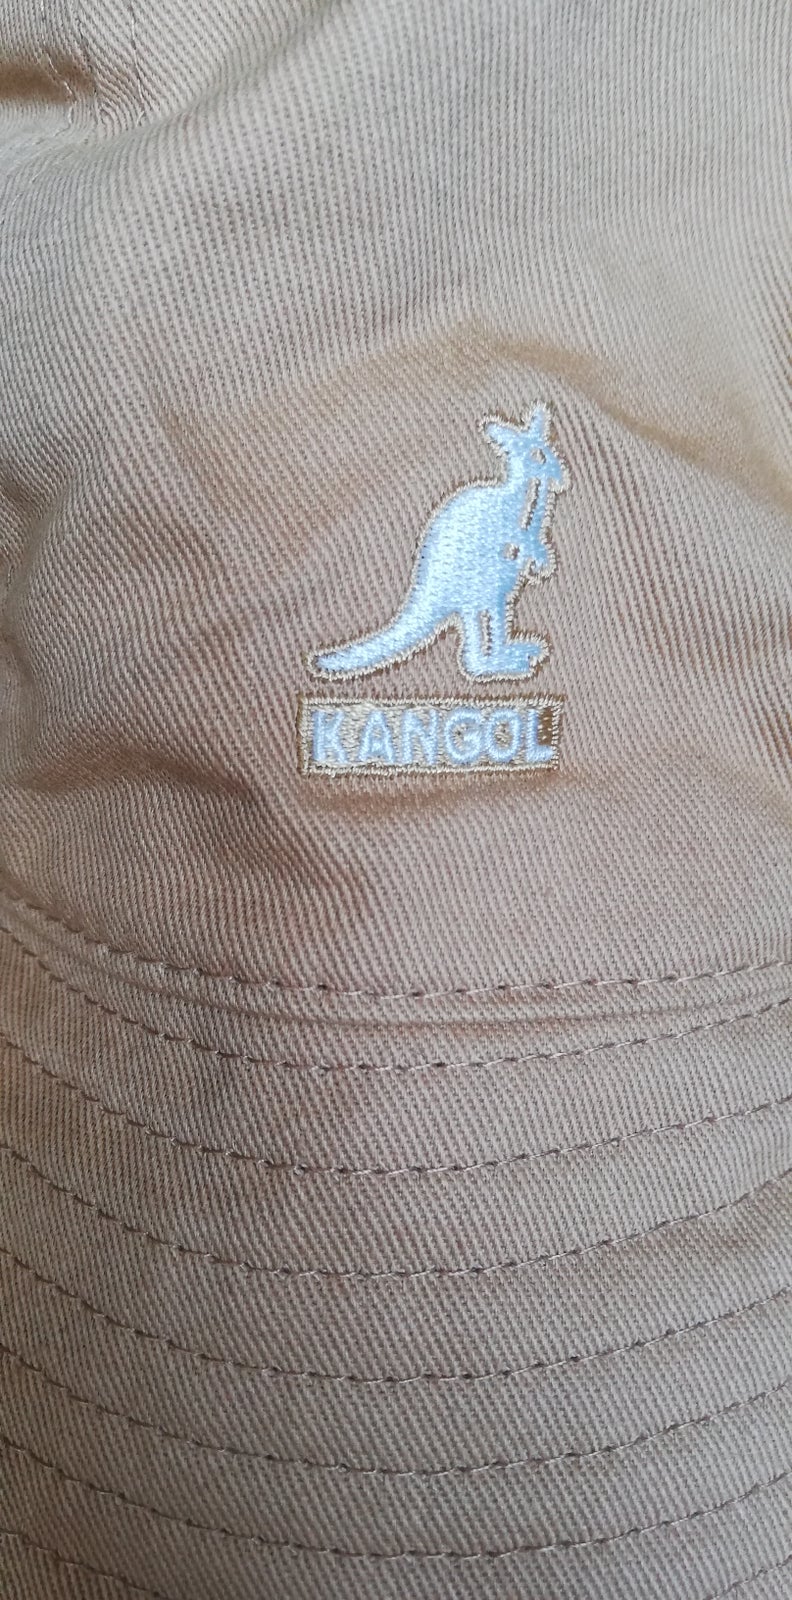 Hat, Kangol, str. L